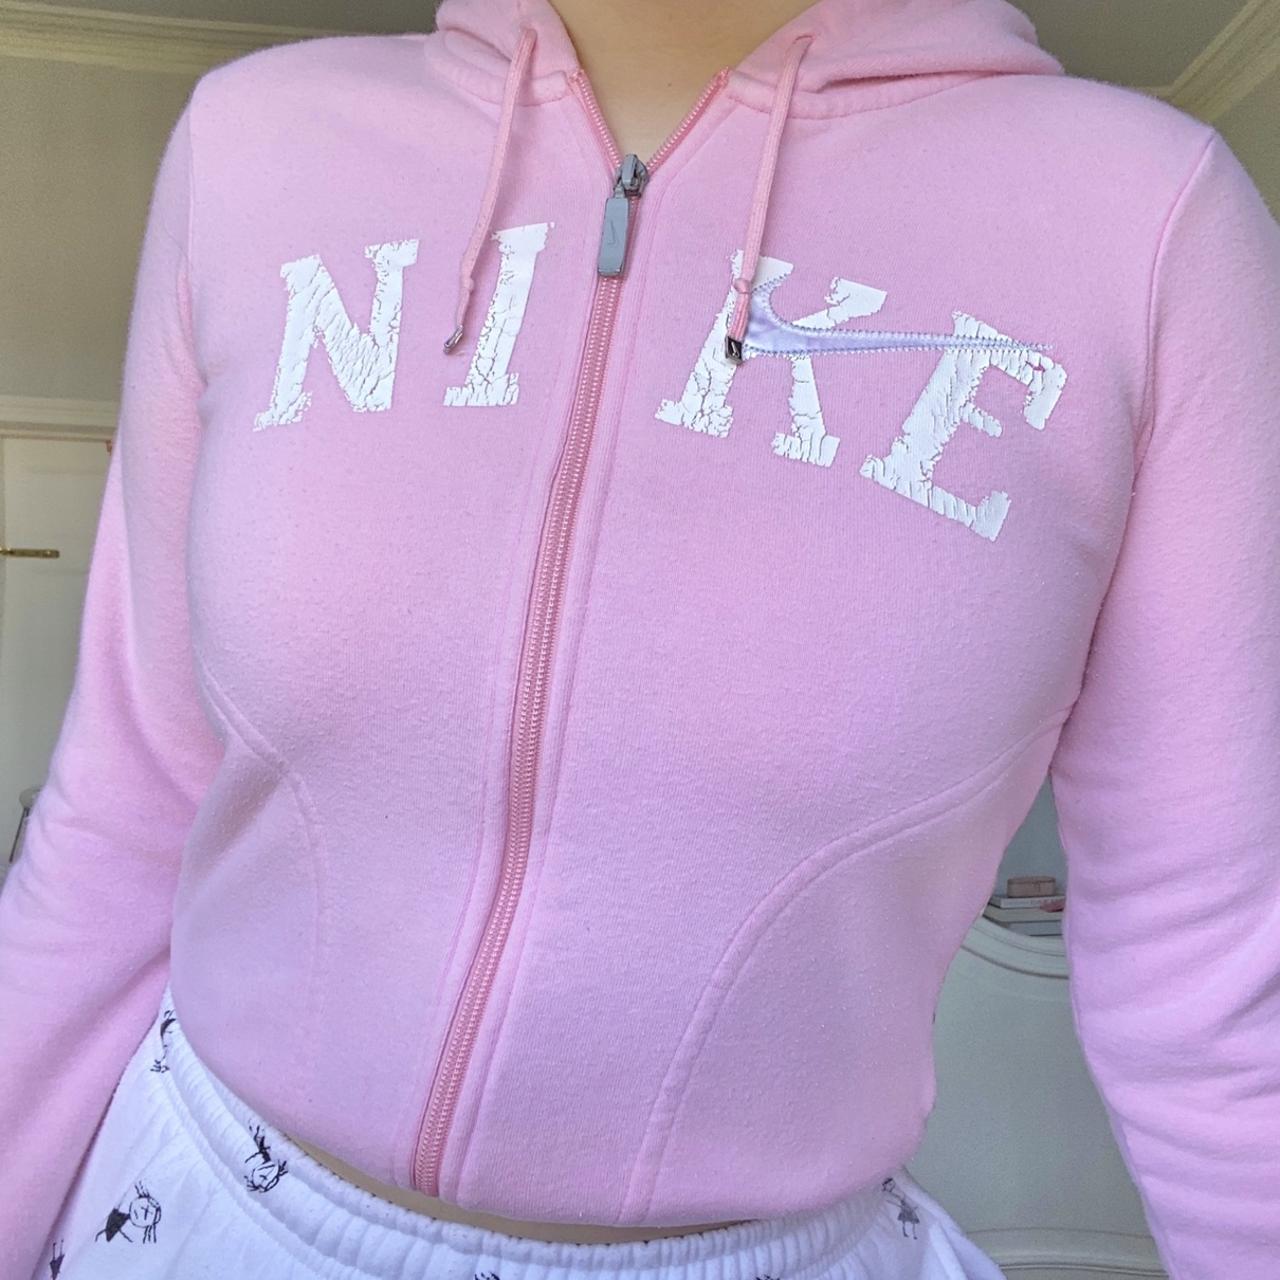 🦋🌸Rare Vintage Nike zip up hoodie. Light pink with... - Depop